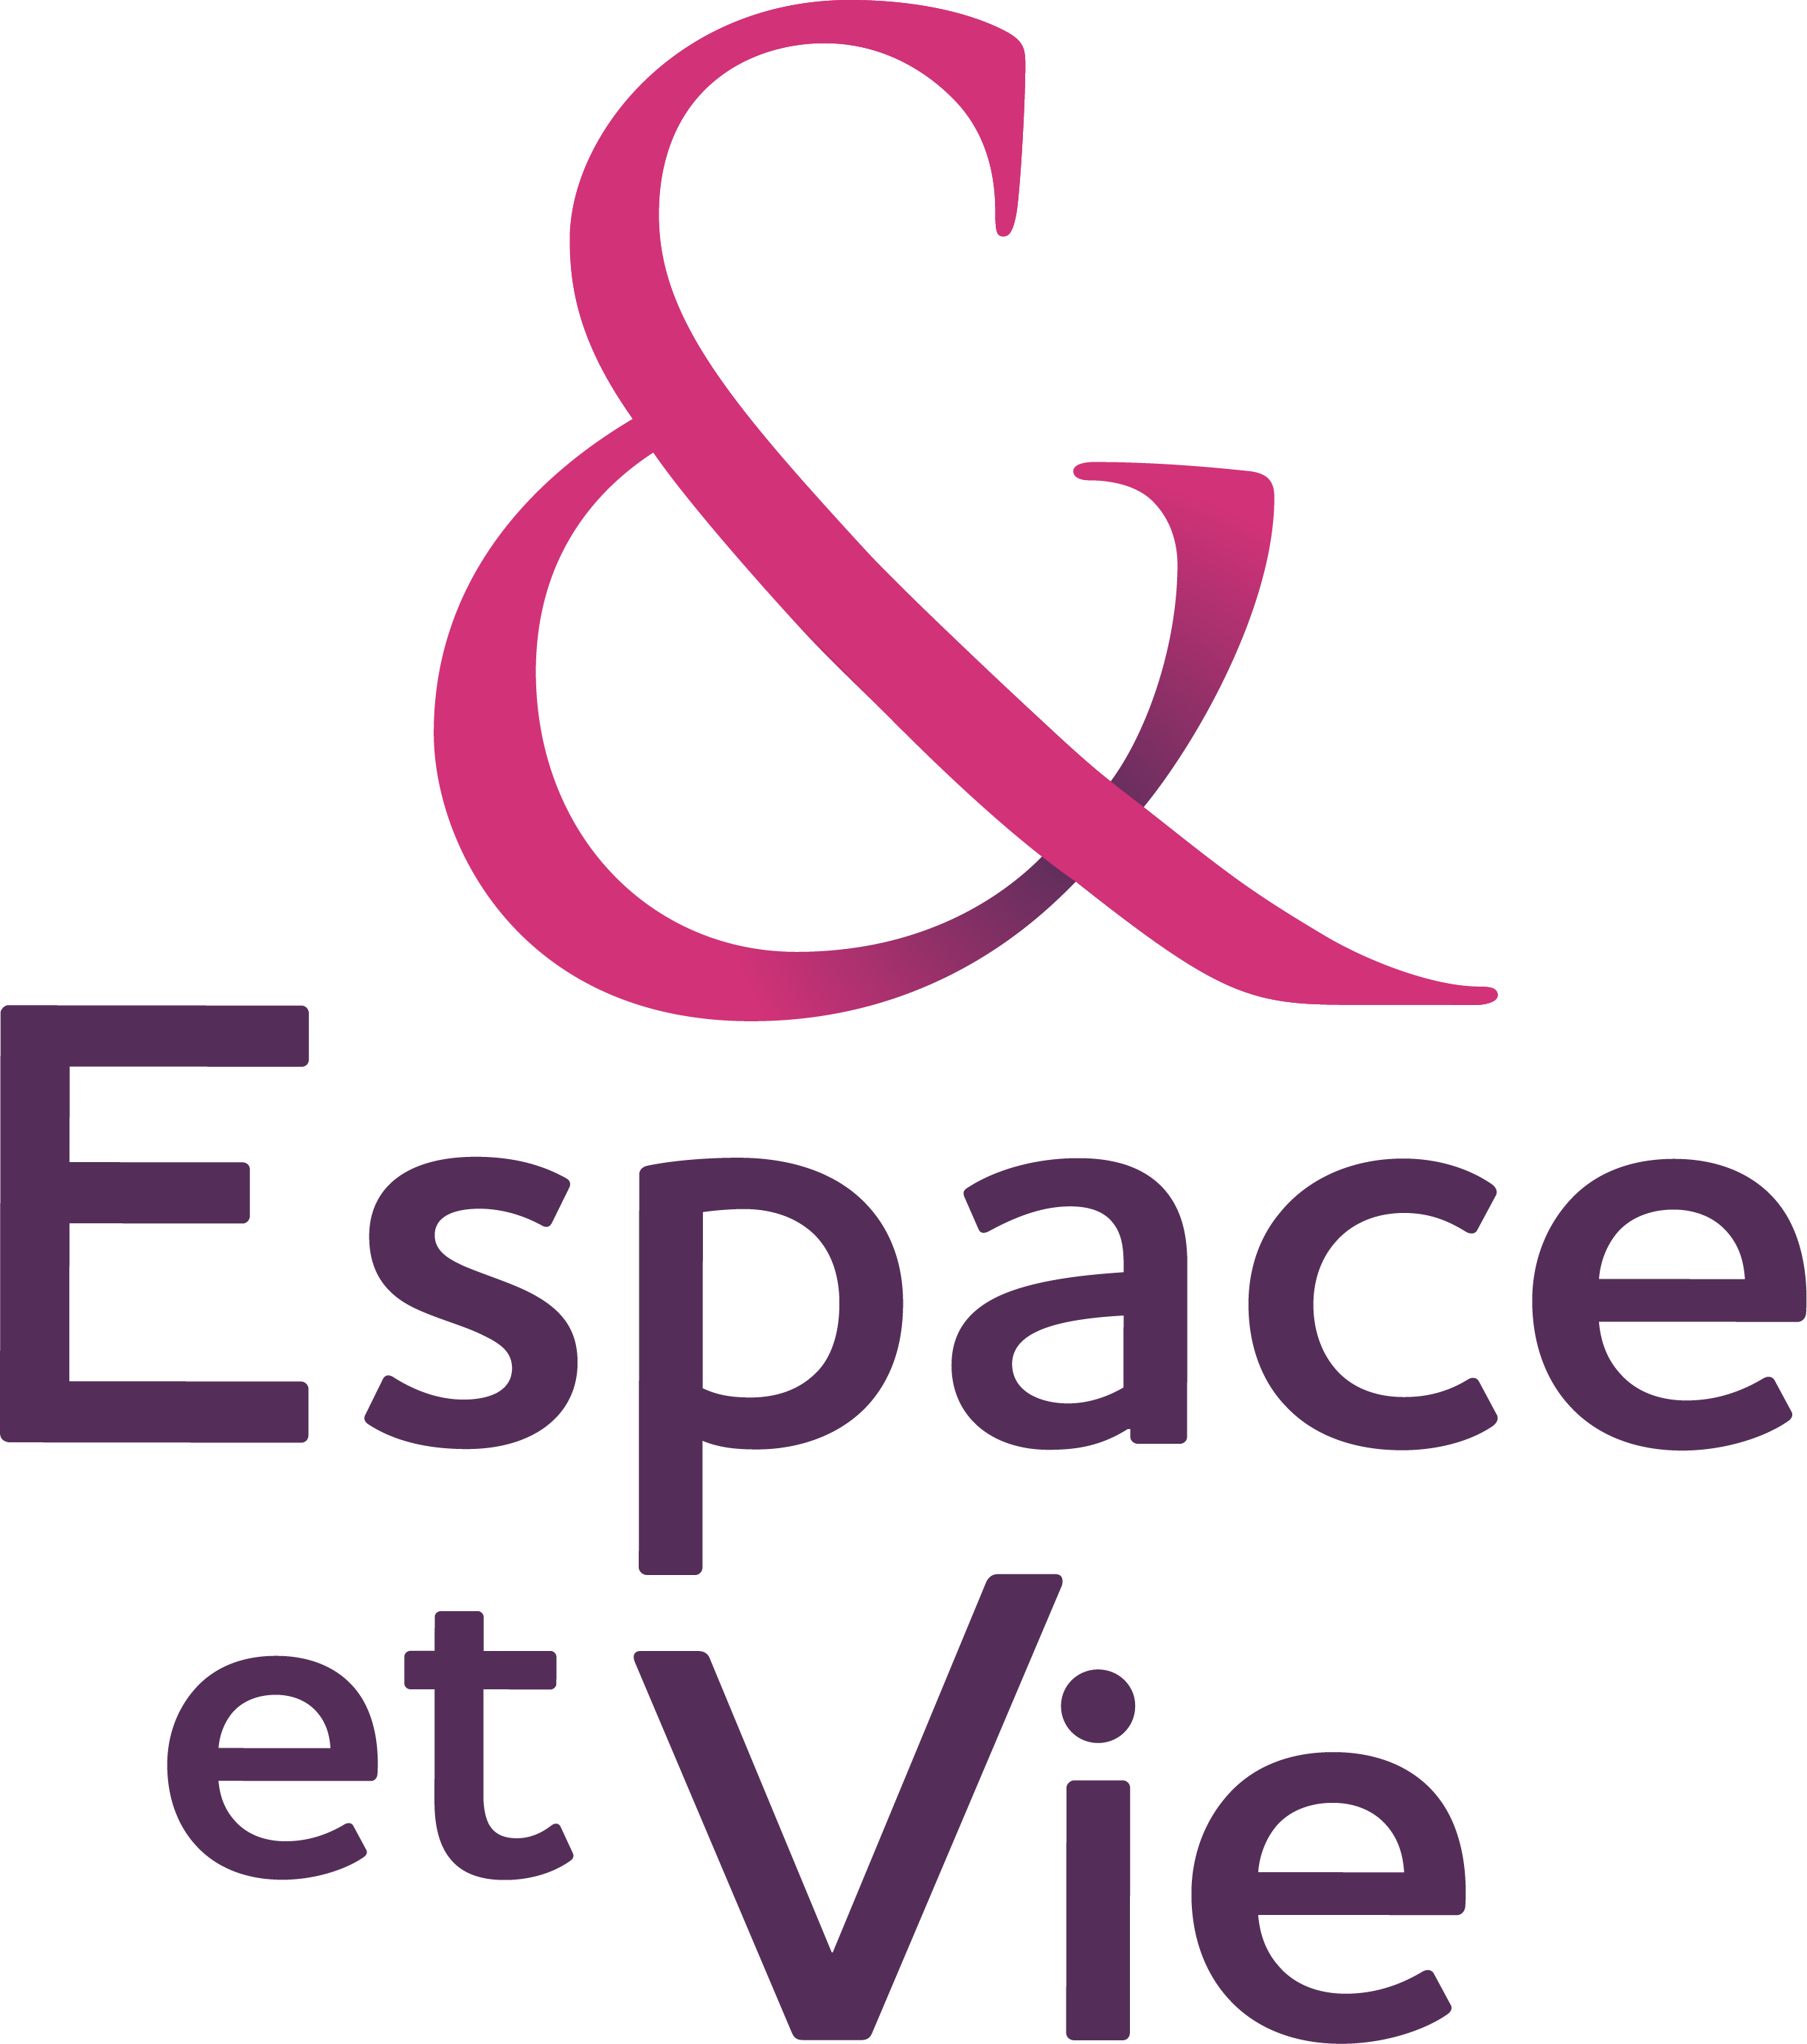 Logo Résidence Espace et Vie Meulan en Yvelines